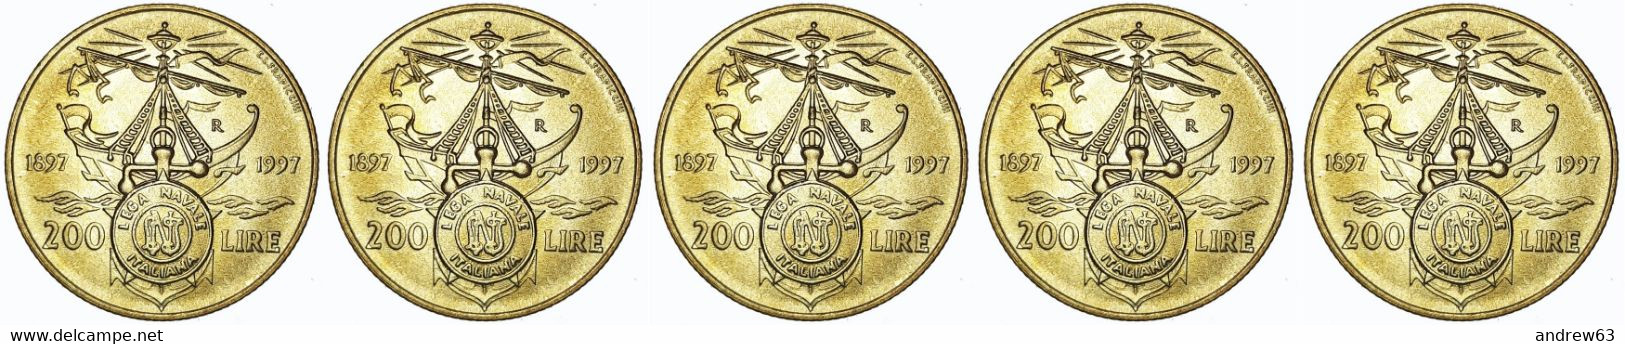 ITALIA - Lire 200 1997 Lega Navale Italiana - FDC/Unc Da Rotolino/from Roll 5 Monete/5 Coins - 200 Liras